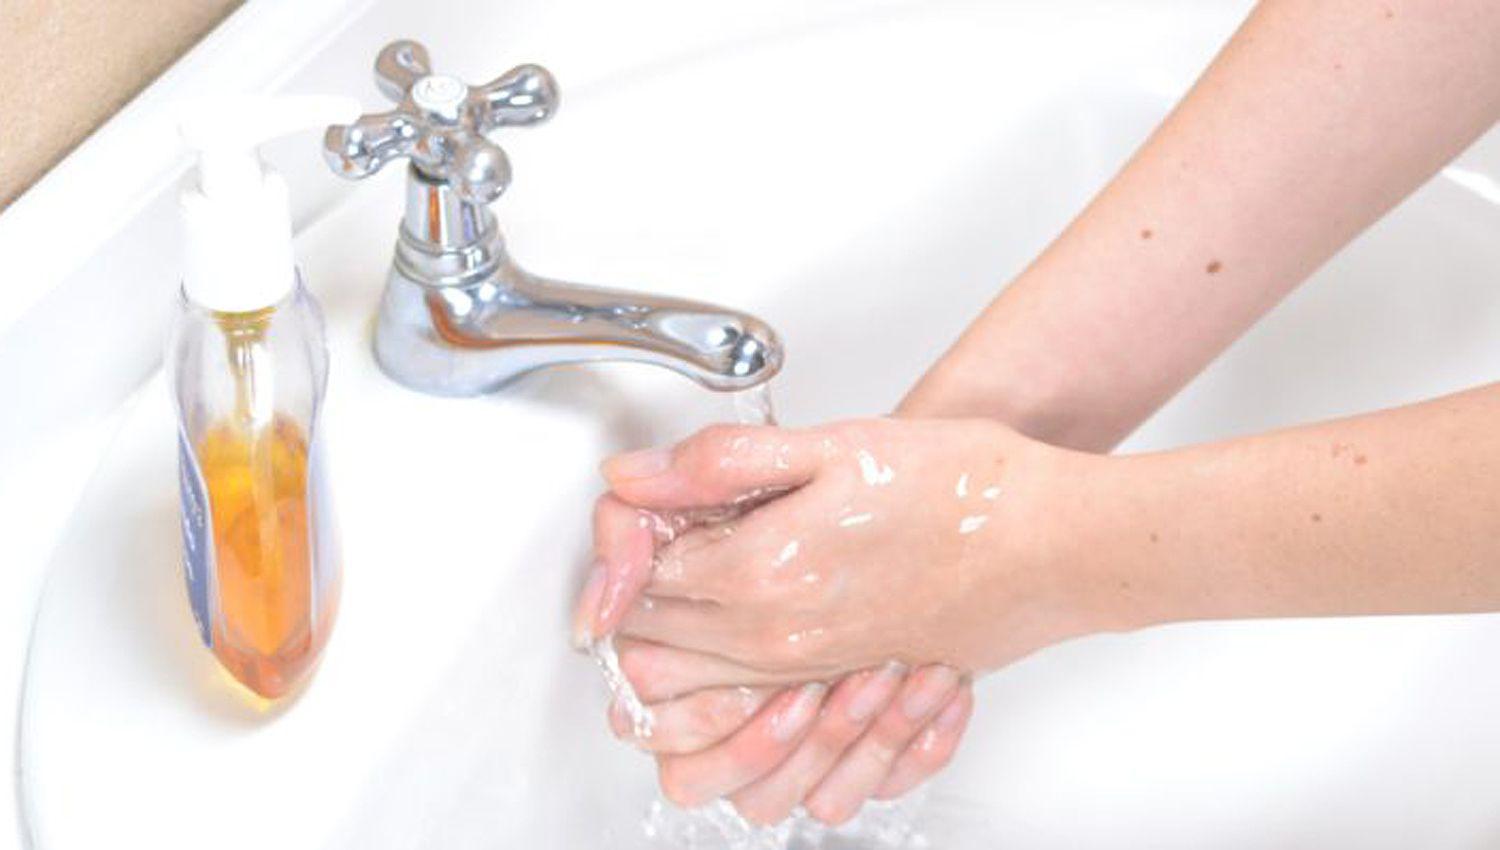 Un elevado n�mero de personas desconoce los beneficios de lavarse las manos seg�n los informes de los organismos de salud